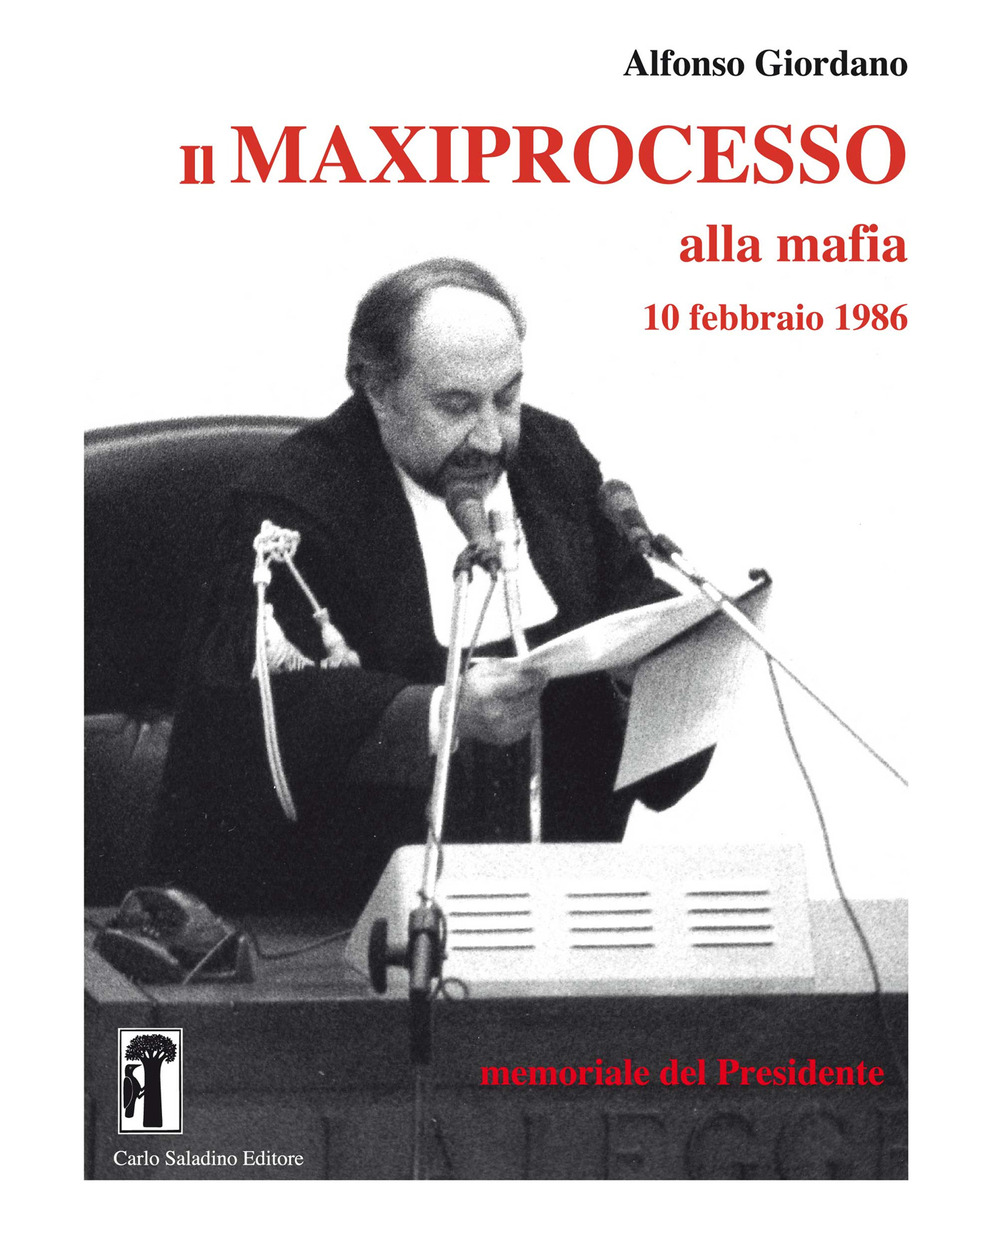 Il maxiprocesso alla mafia. 10 febbraio 1986. Memoriale del Presidente